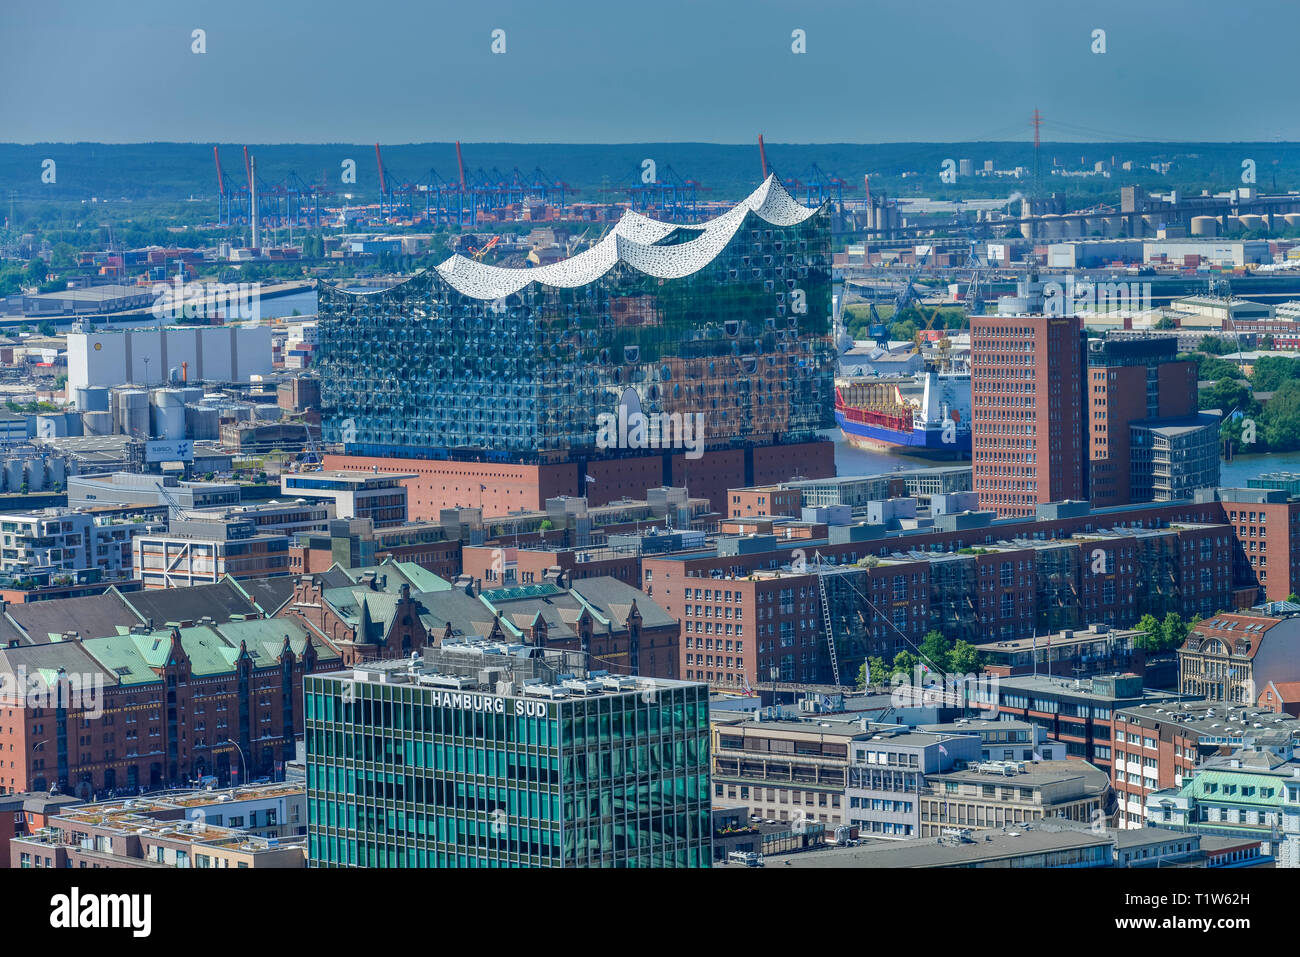 Elbphilharmonie, Hafencity, Speicherstadt di Amburgo, Deutschland Foto Stock